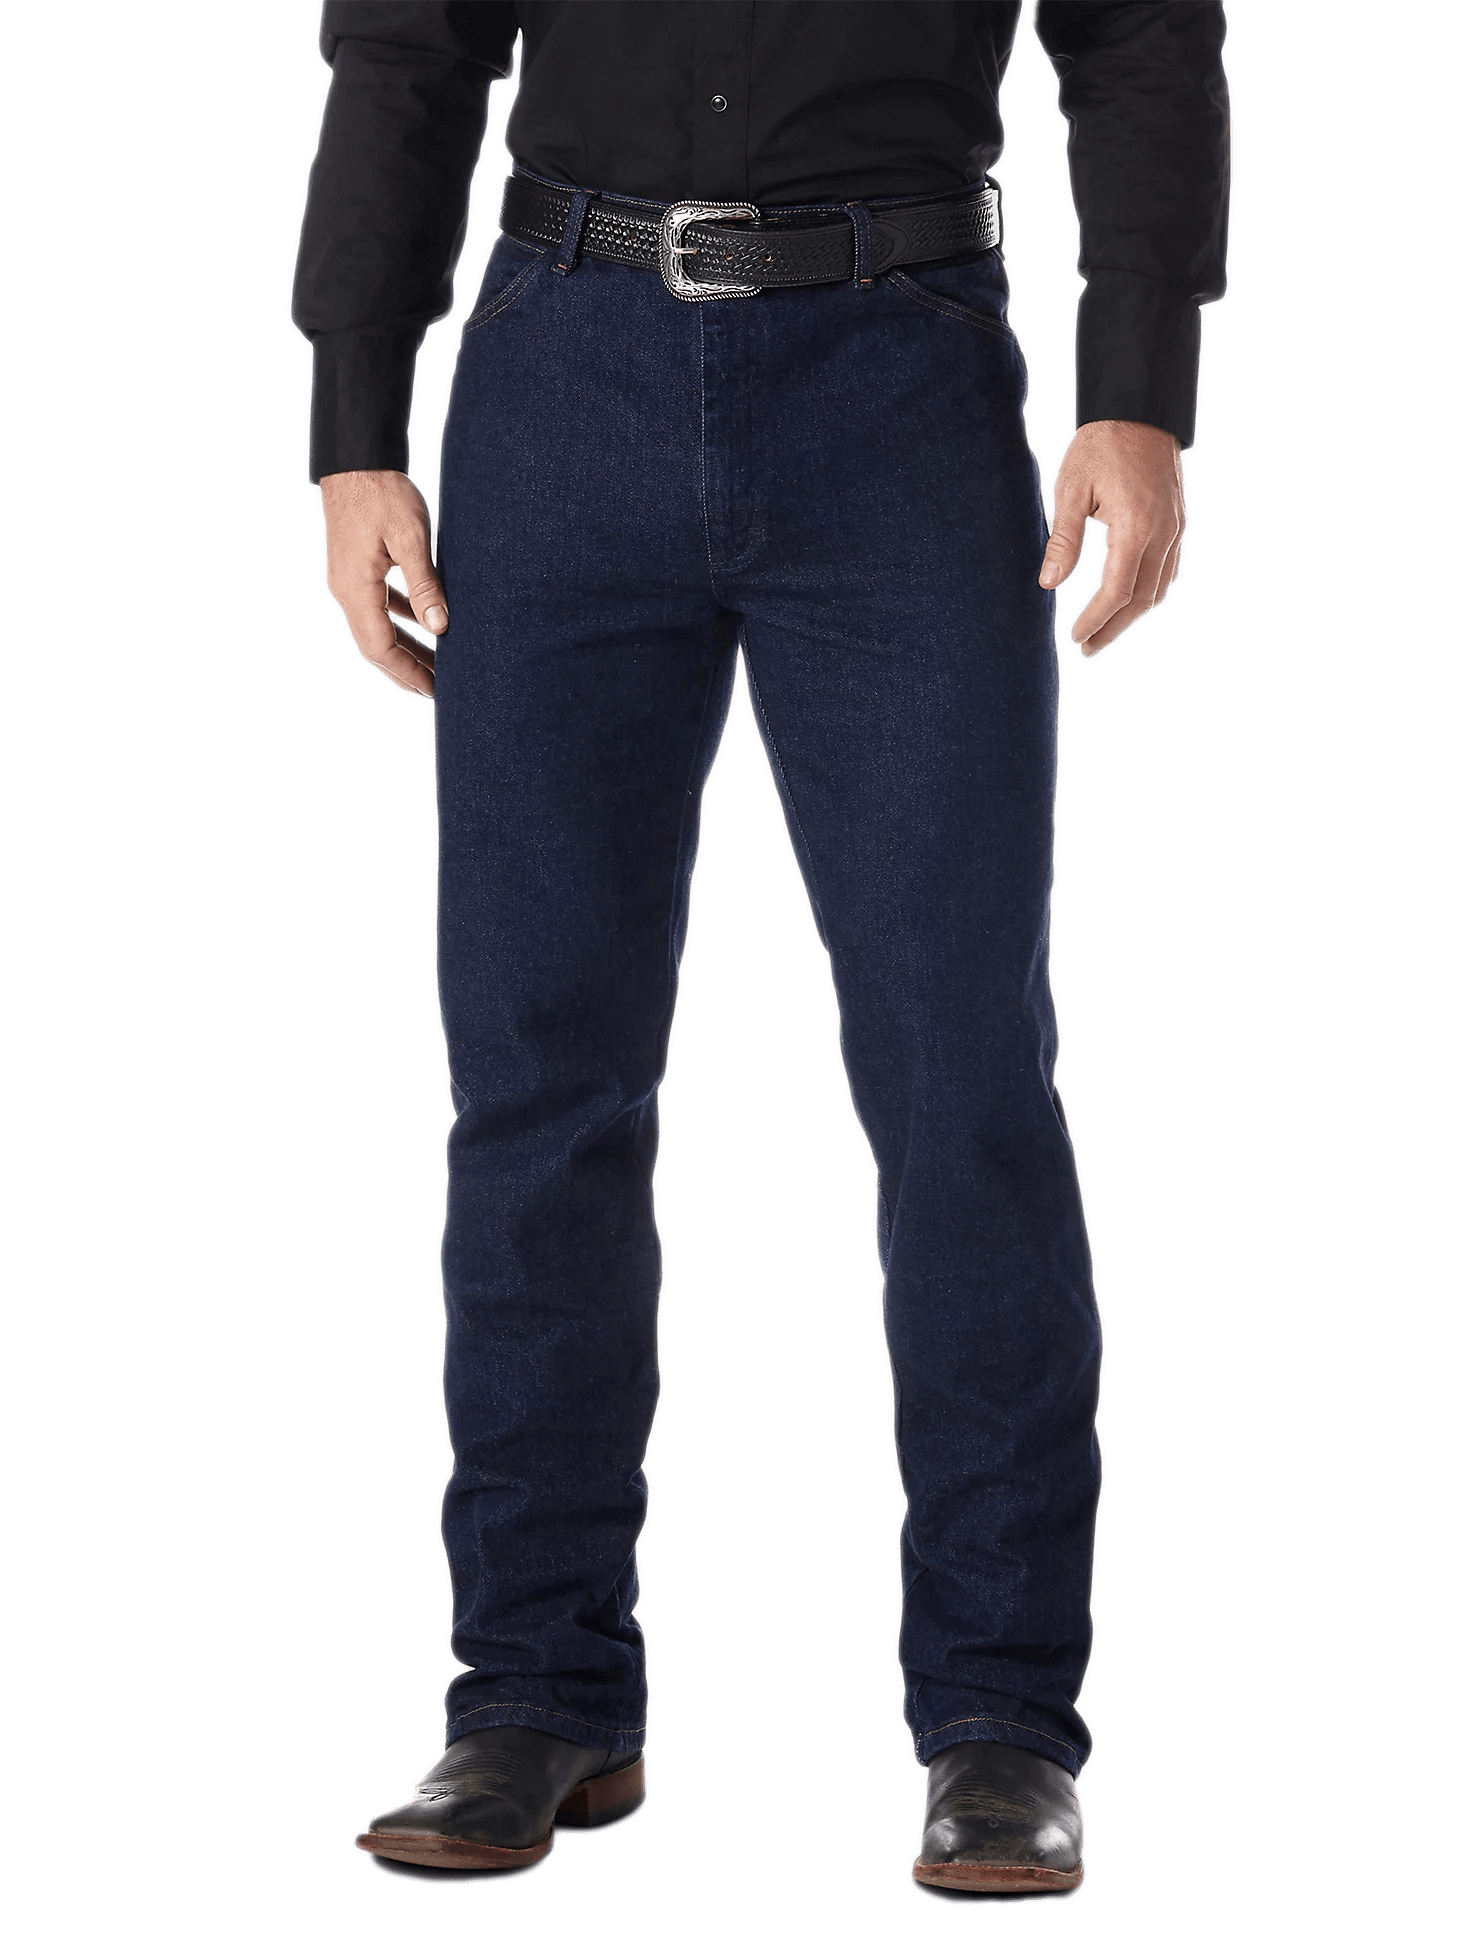 Wrangler 936 Cowboy Cut Slim Fit Jeans Men's